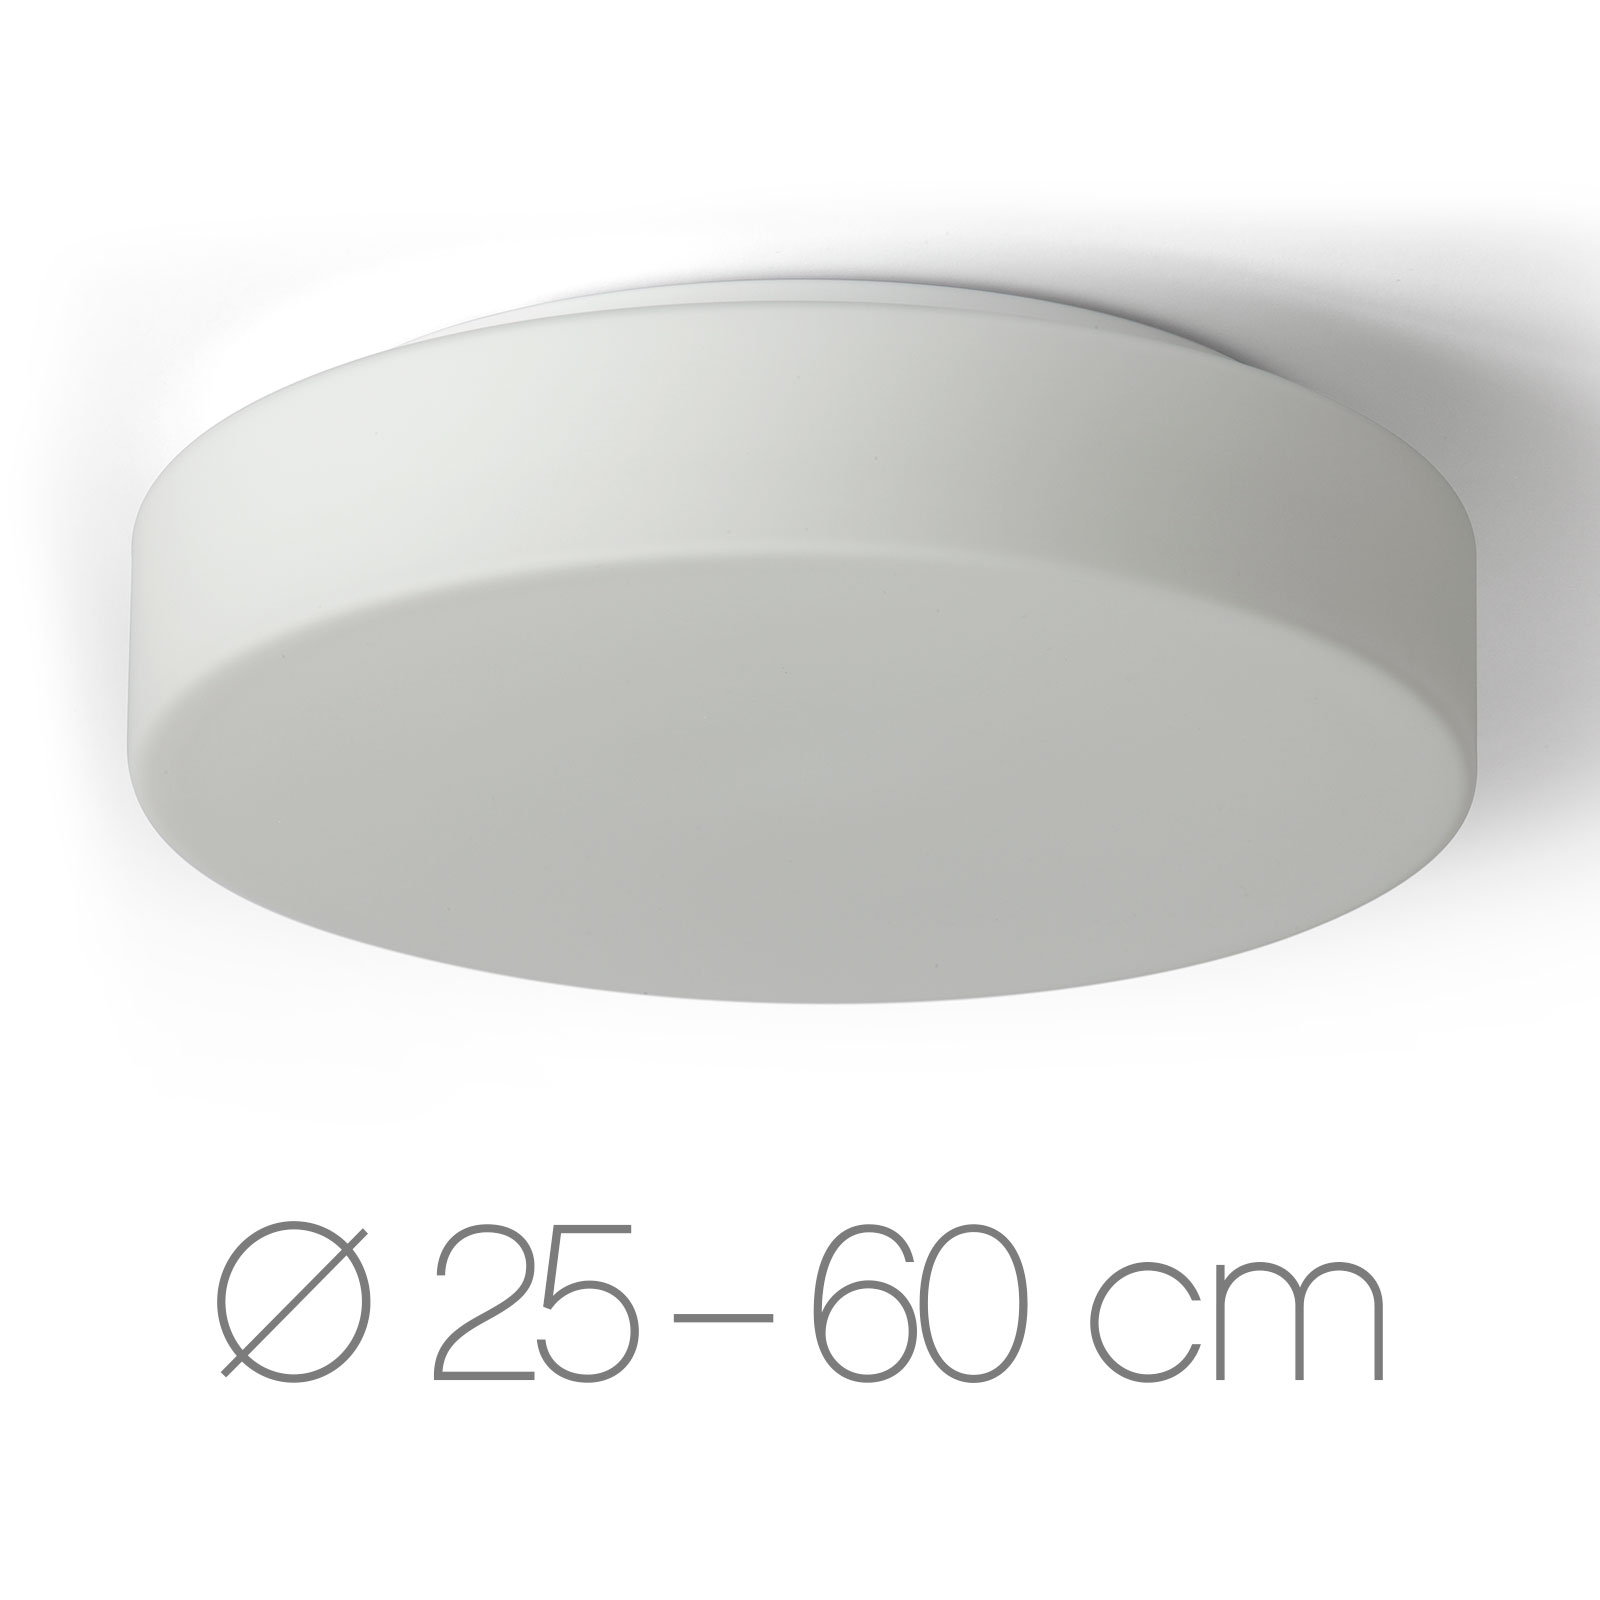 Schlichte, runde Opalglas-Deckenleuchte ELISA, Ø 25 bis 60 cm: Die schlichte, runde Glas-Deckenleuchte (hier mit Ø 36 cm, M) überzeugt mit hochwertigem, samtig-mattem Opalglas